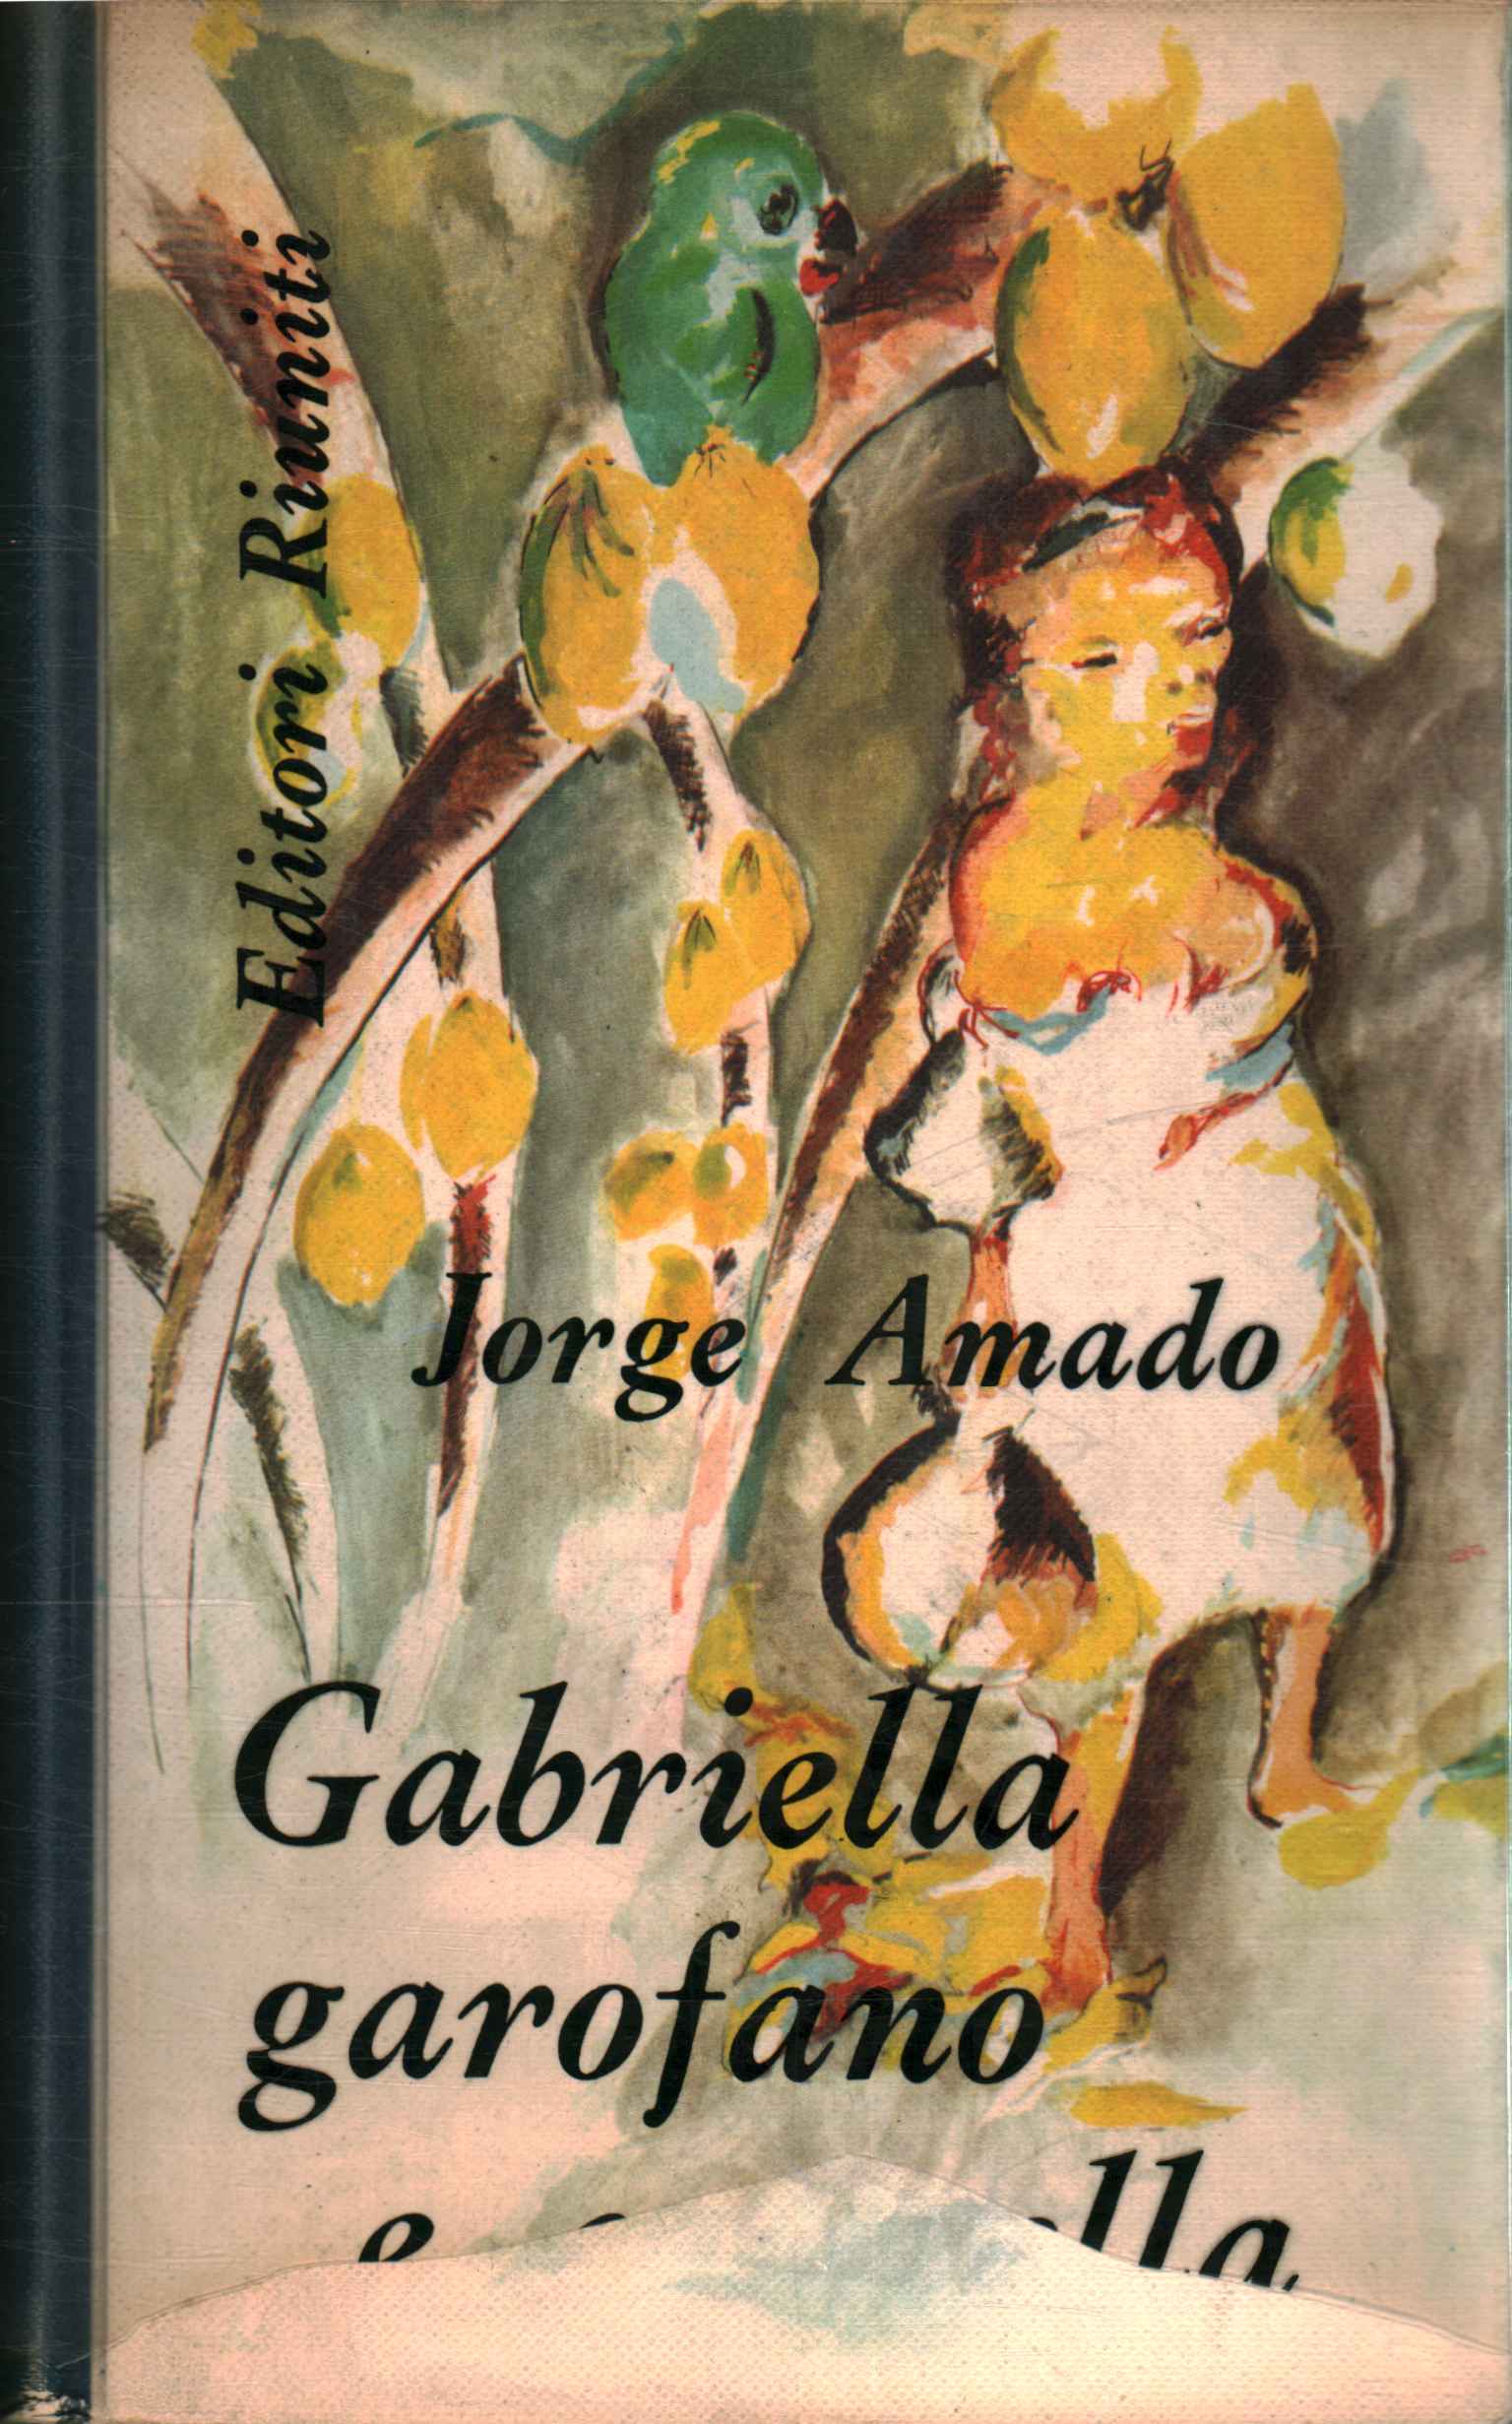 Gabriella carnation and cinnamon